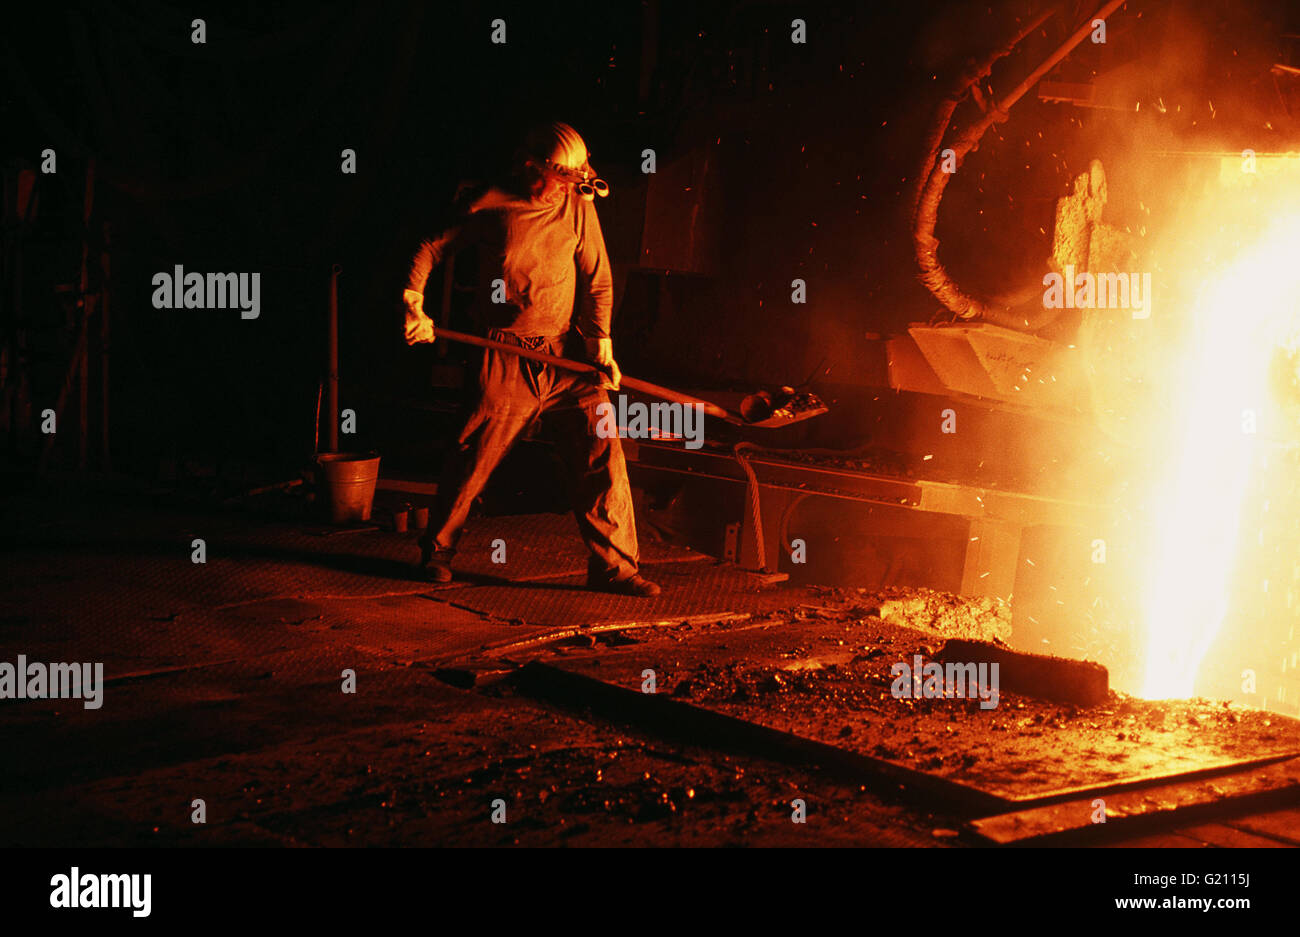 Alemania - Velbert Krupp, la producción de acero. Trabajador vistiendo ropa protectora opera cerca de horno con acero fundido Foto de stock